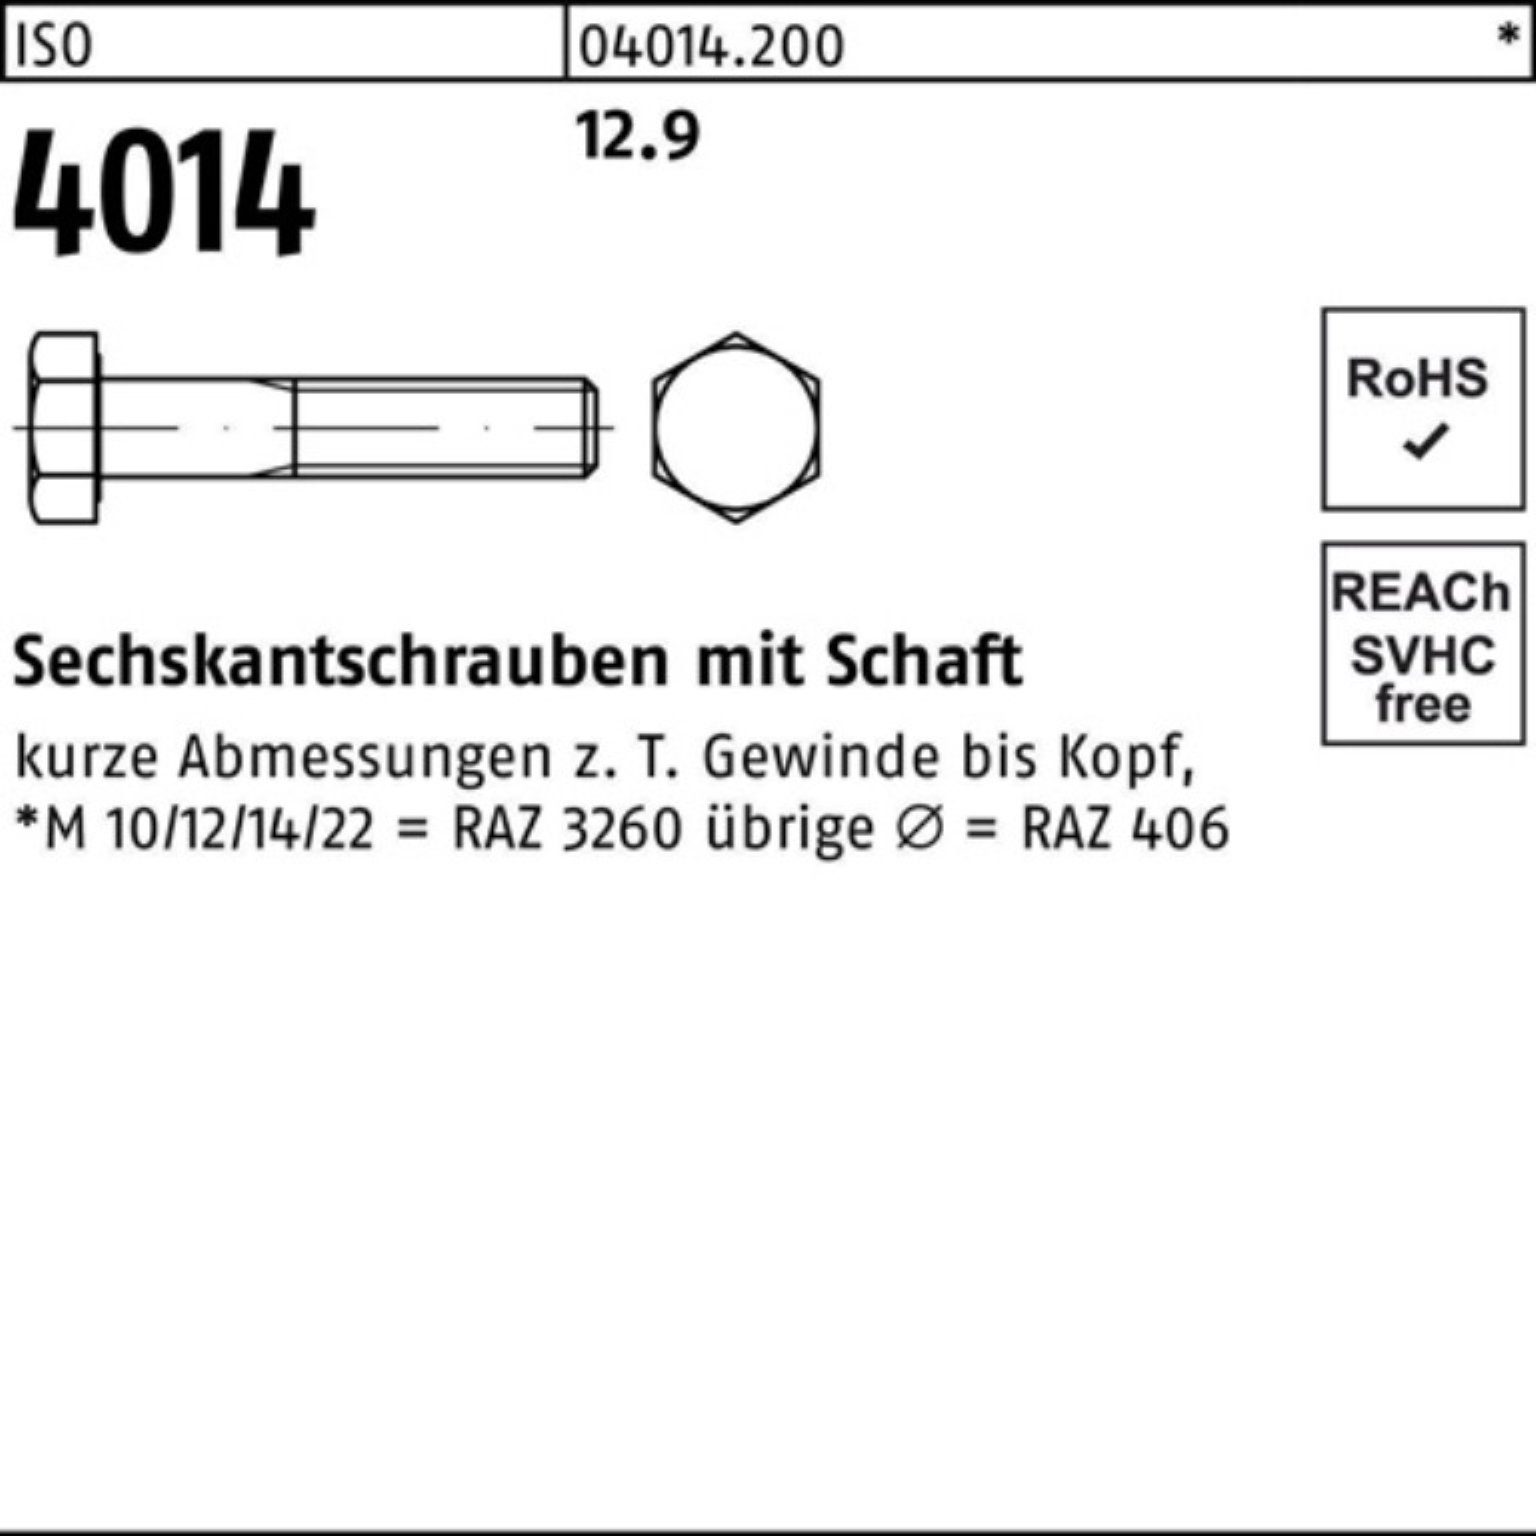 Sechskantschraube Bufab 65 M12x 100er 12.9 50 Stück Pack 4014 Sechskantschraube Schaft IS ISO